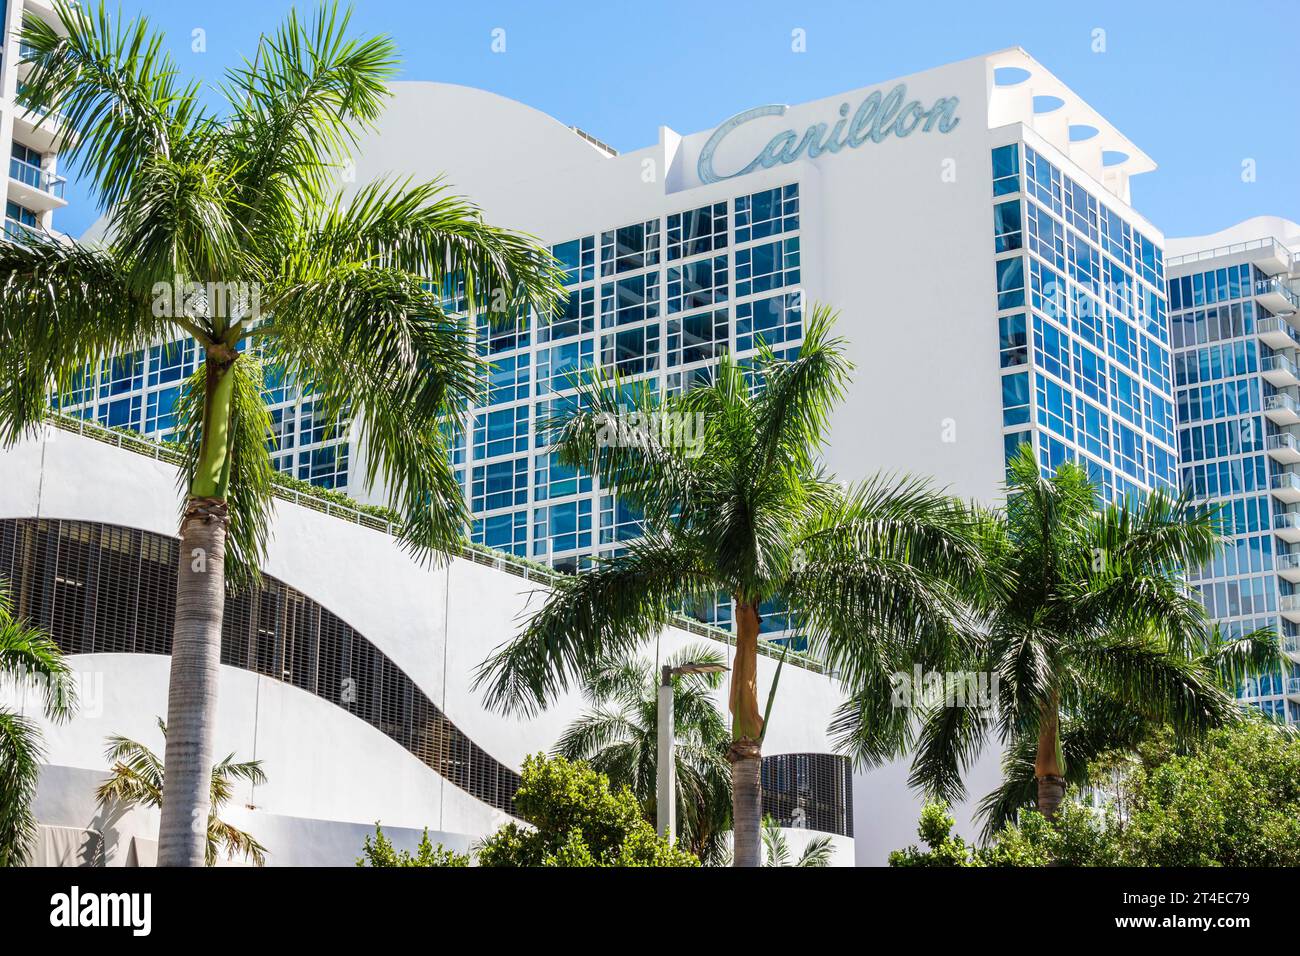 Miami Beach Florida, Außenfassade, Hotel vor dem Gebäude, Collins Avenue, Carillon Miami Wellness Resort Schild, Hochhaus Hochhaus Hochhaus Stockfoto